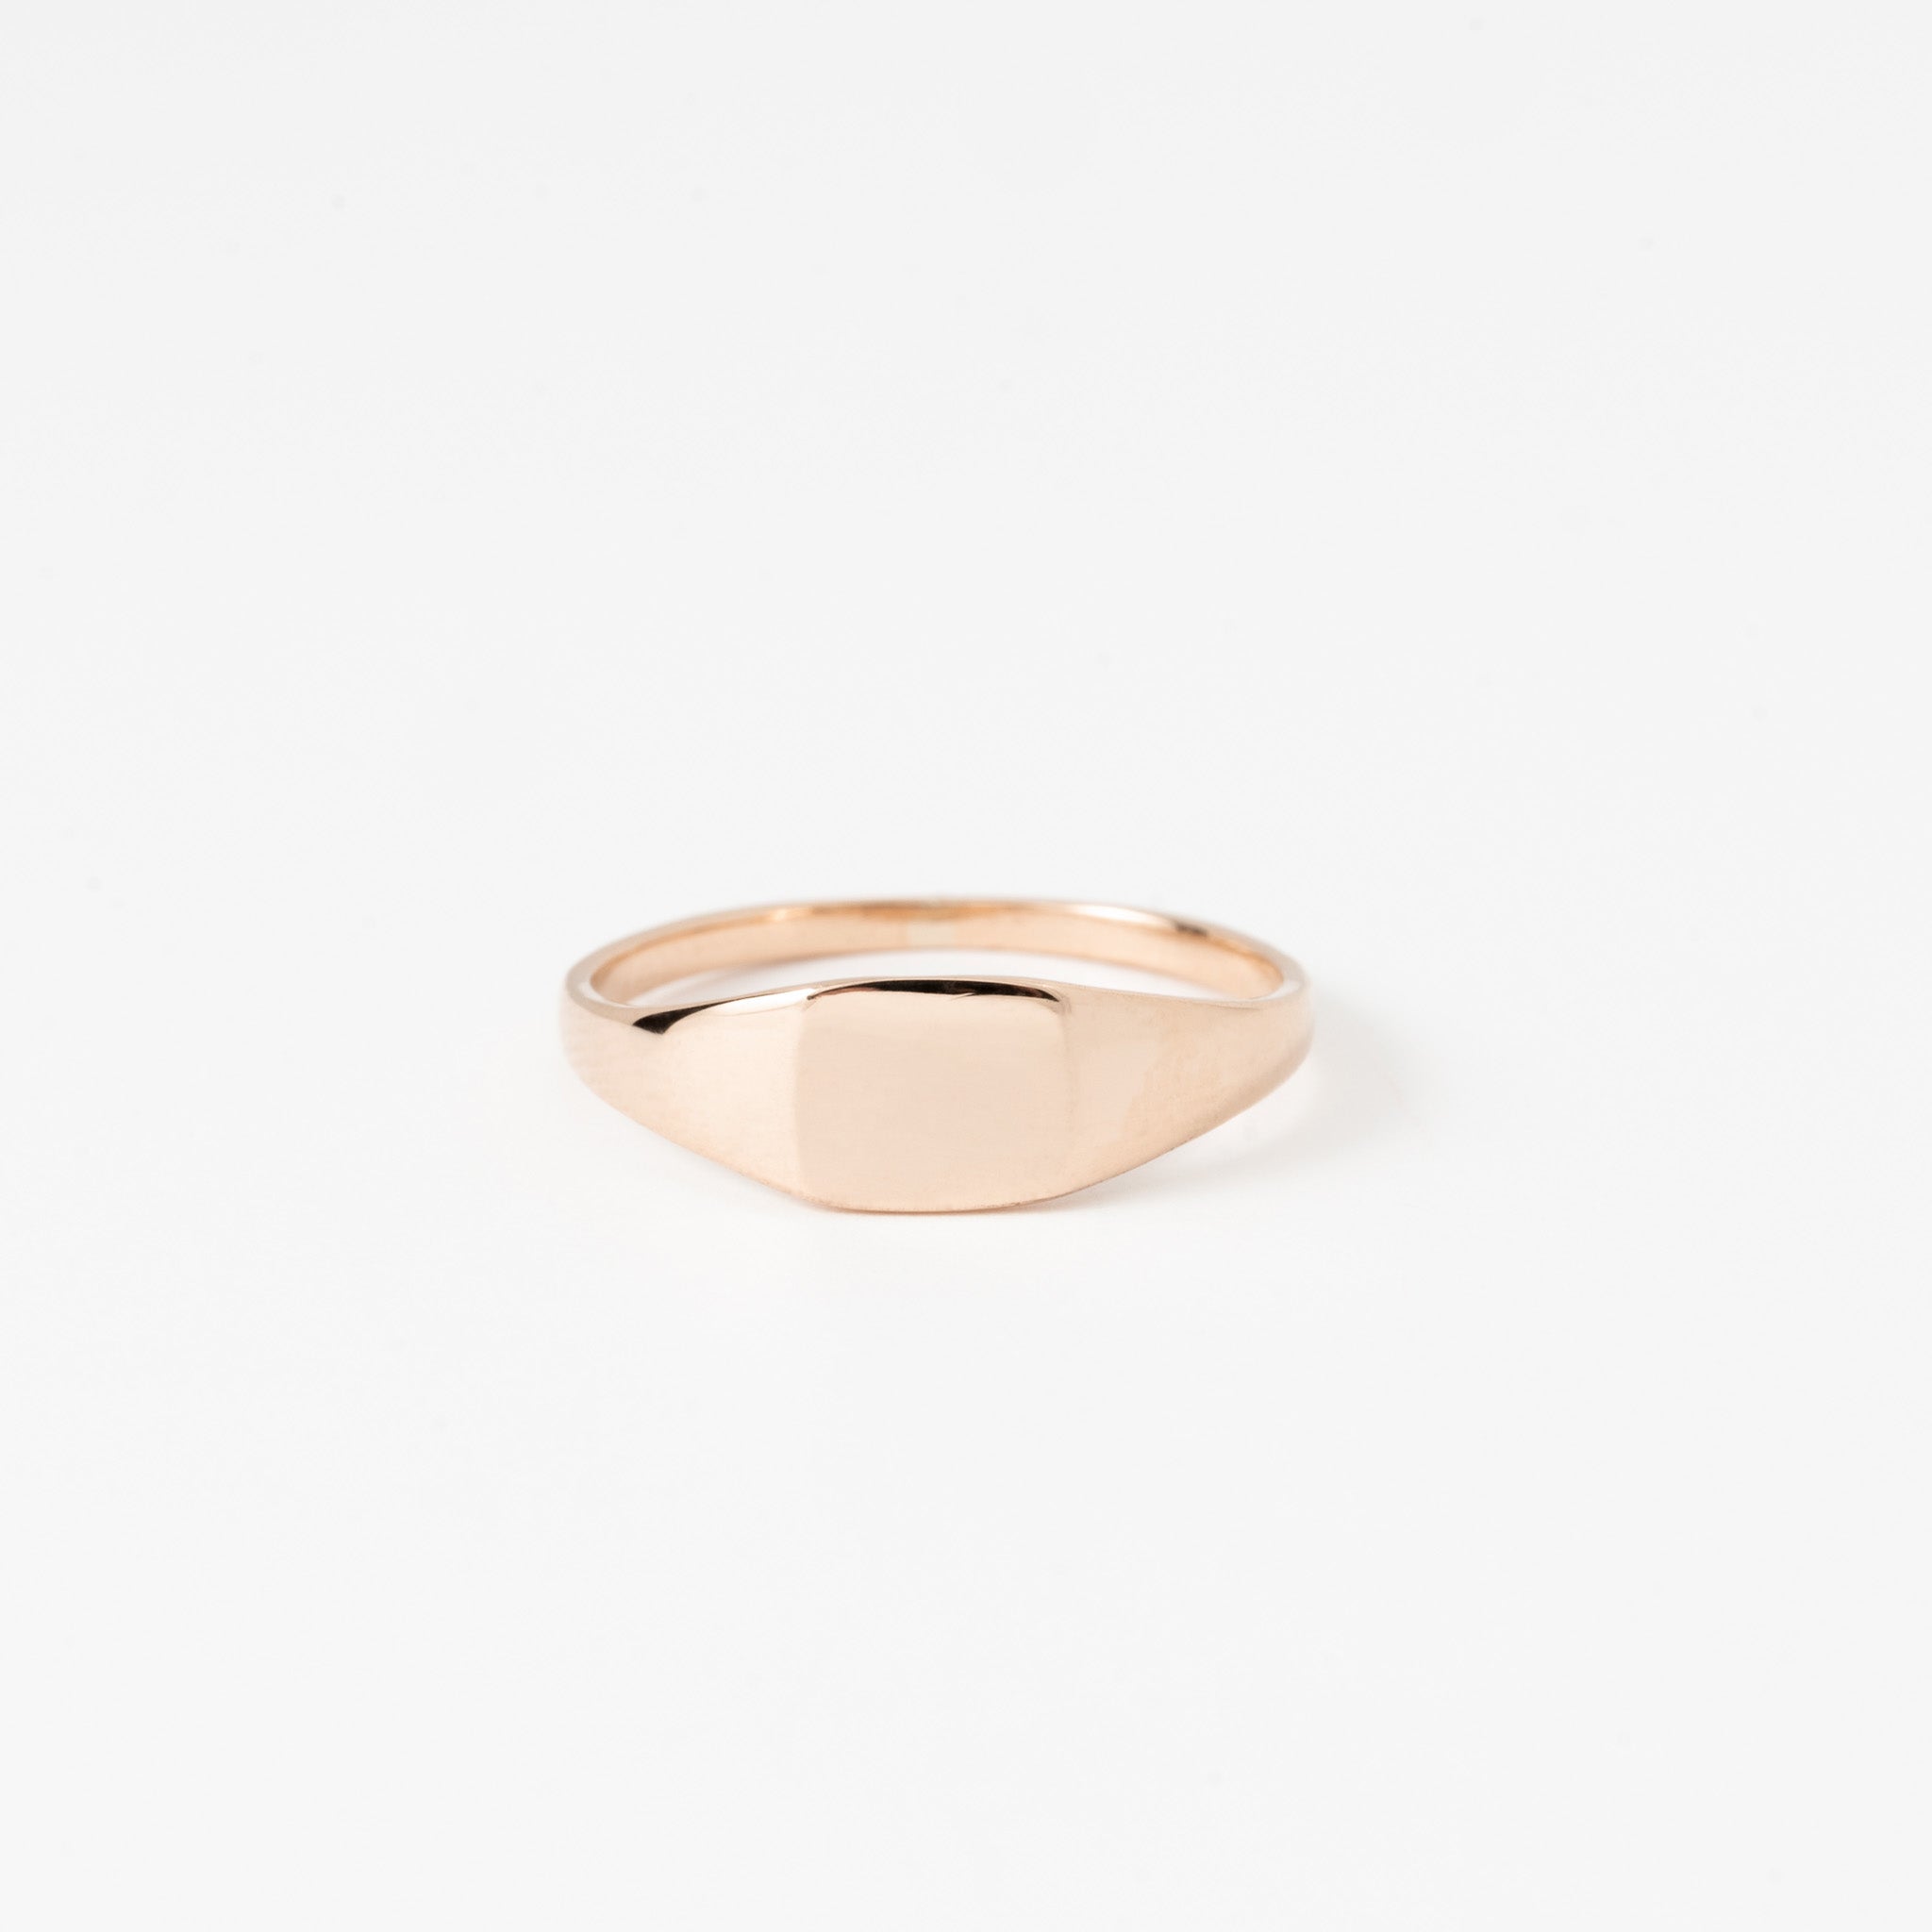 The Mini Signet Ring